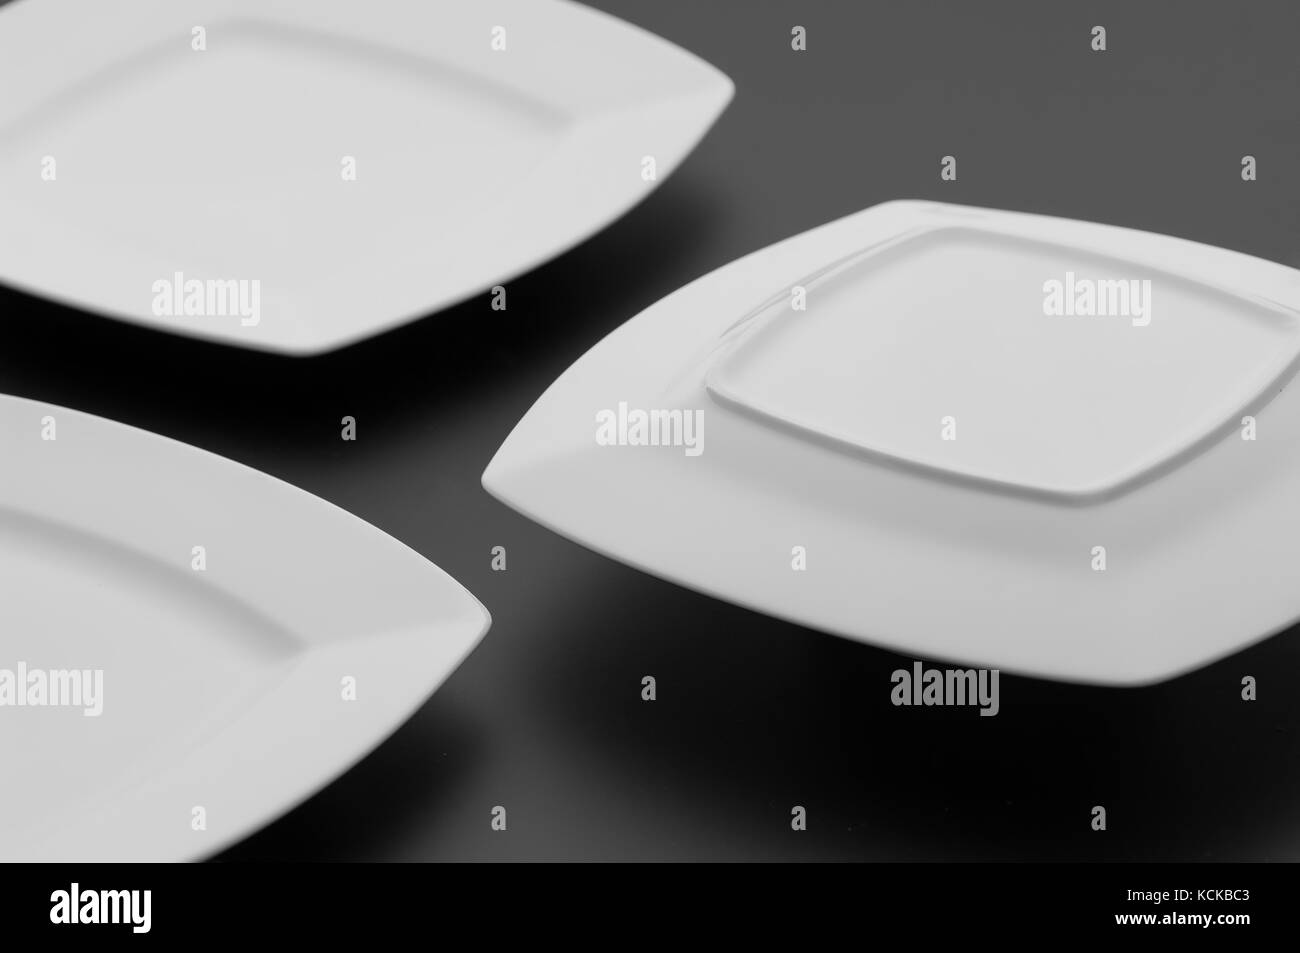 https://c8.alamy.com/comp/KCKBC3/kitchen-and-restaurant-utensils-plates-on-a-dark-background-KCKBC3.jpg